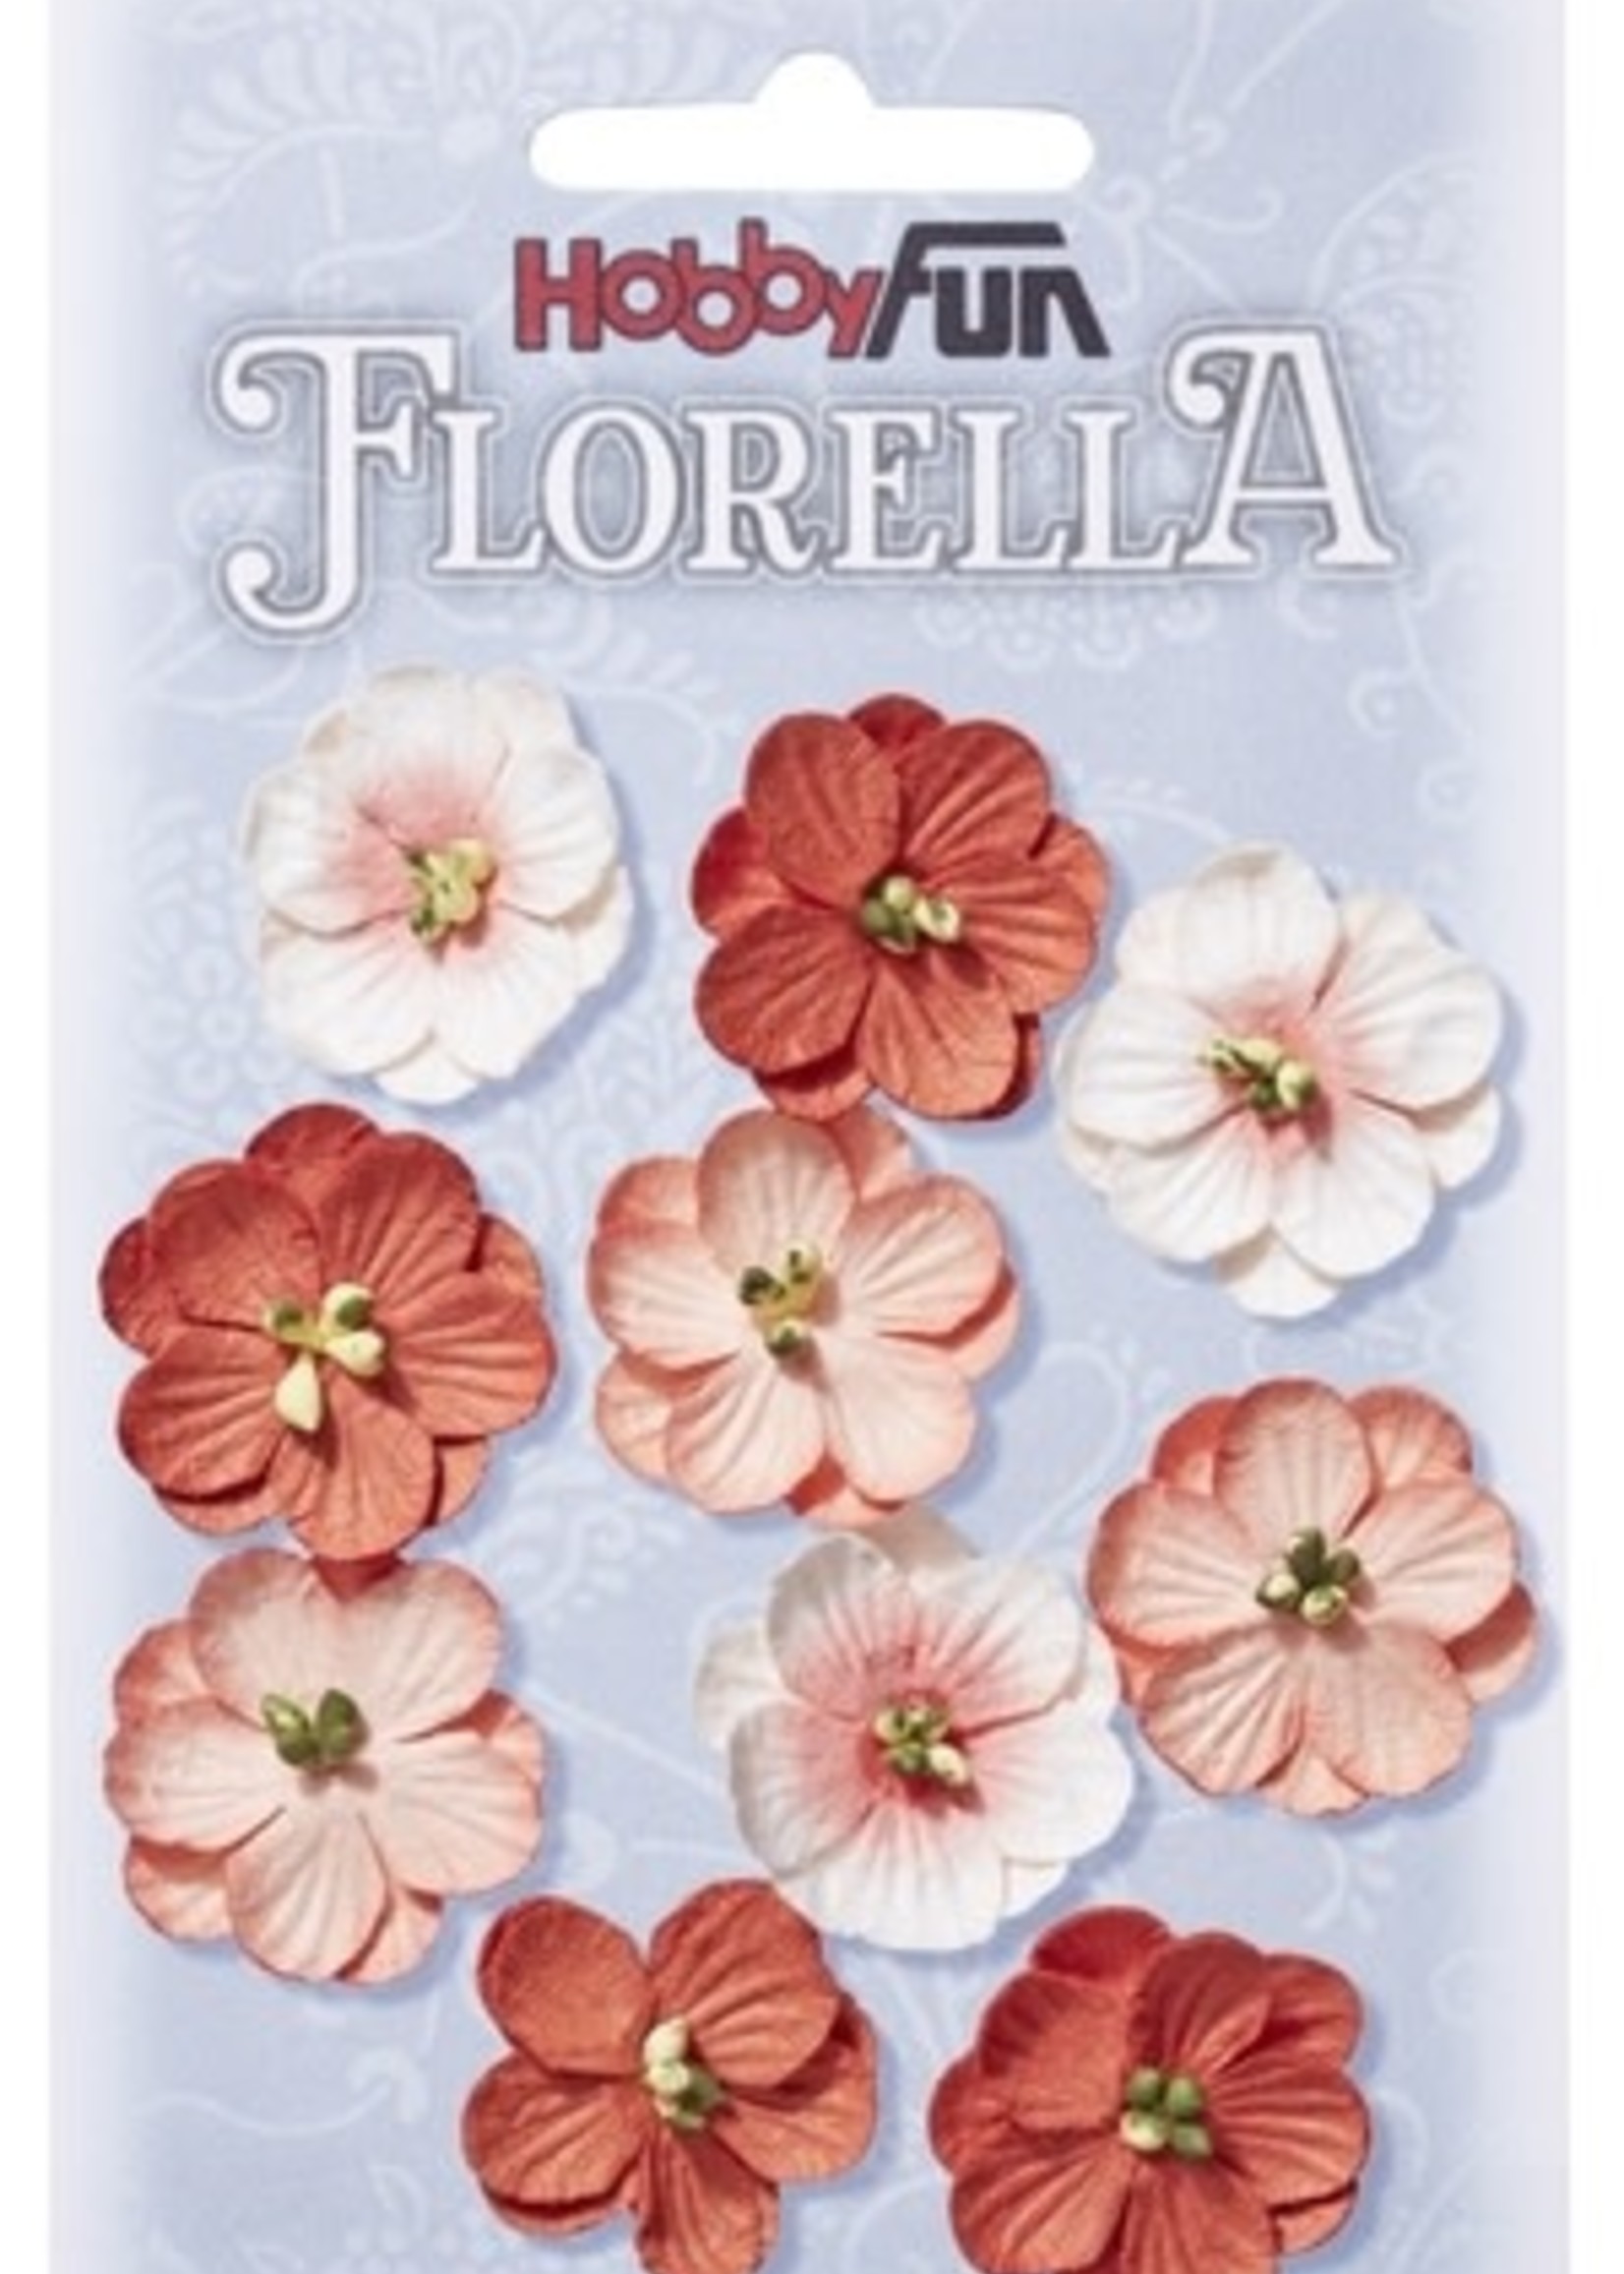 Hobbyfun Hobbyfun - Florella - Bloemen bordeaux 2.5 cm